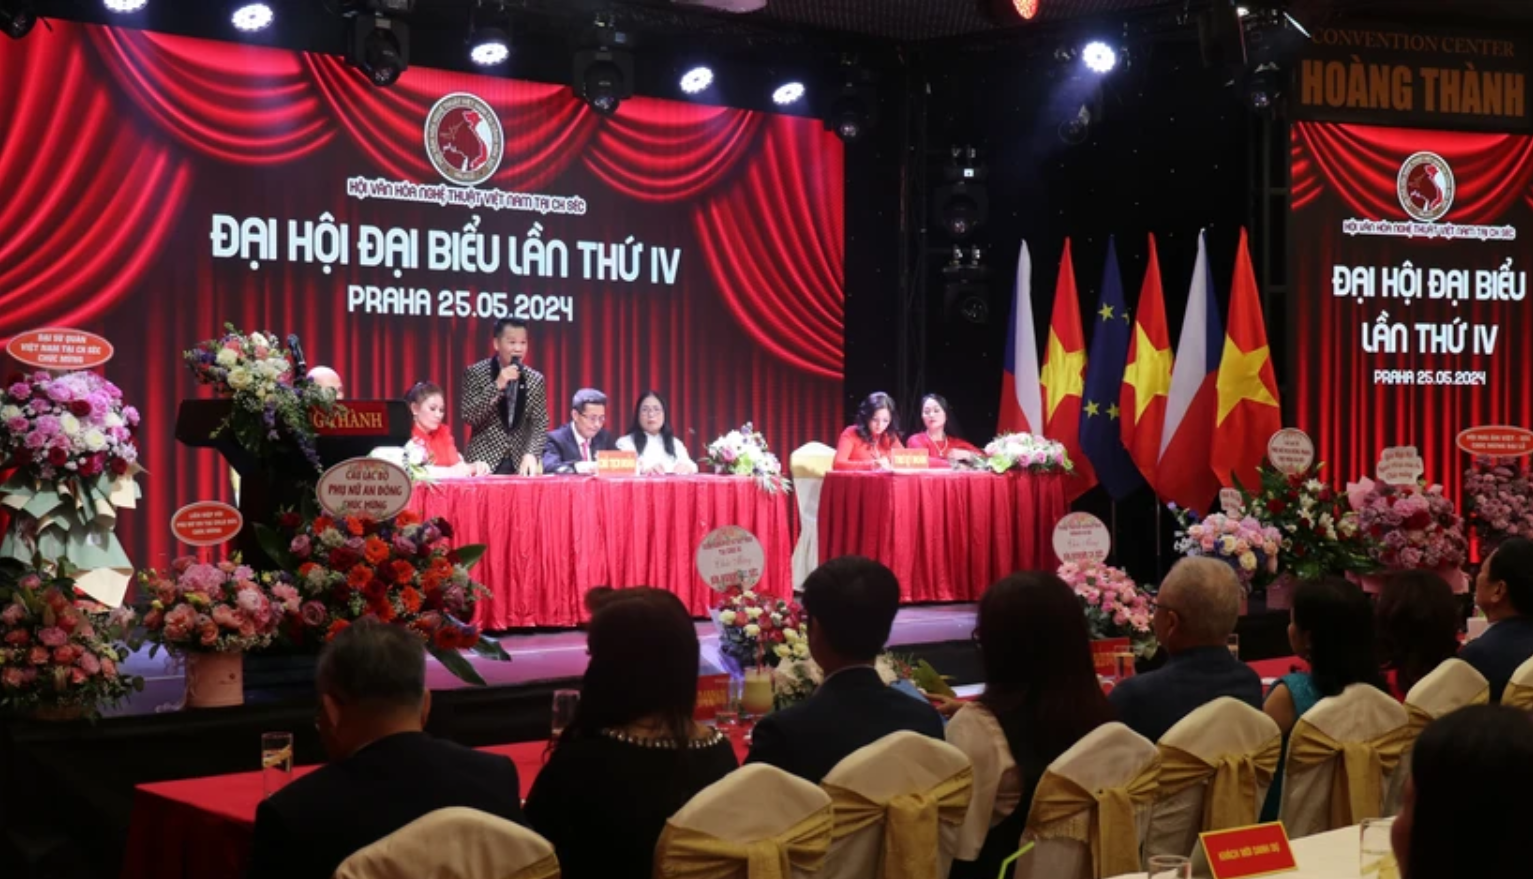 Đại hội đại biểu Hội Văn hoá Nghệ thuật Việt Nam lần thứ 4 tại Cộng hòa Séc. (Ảnh: TTXVN)